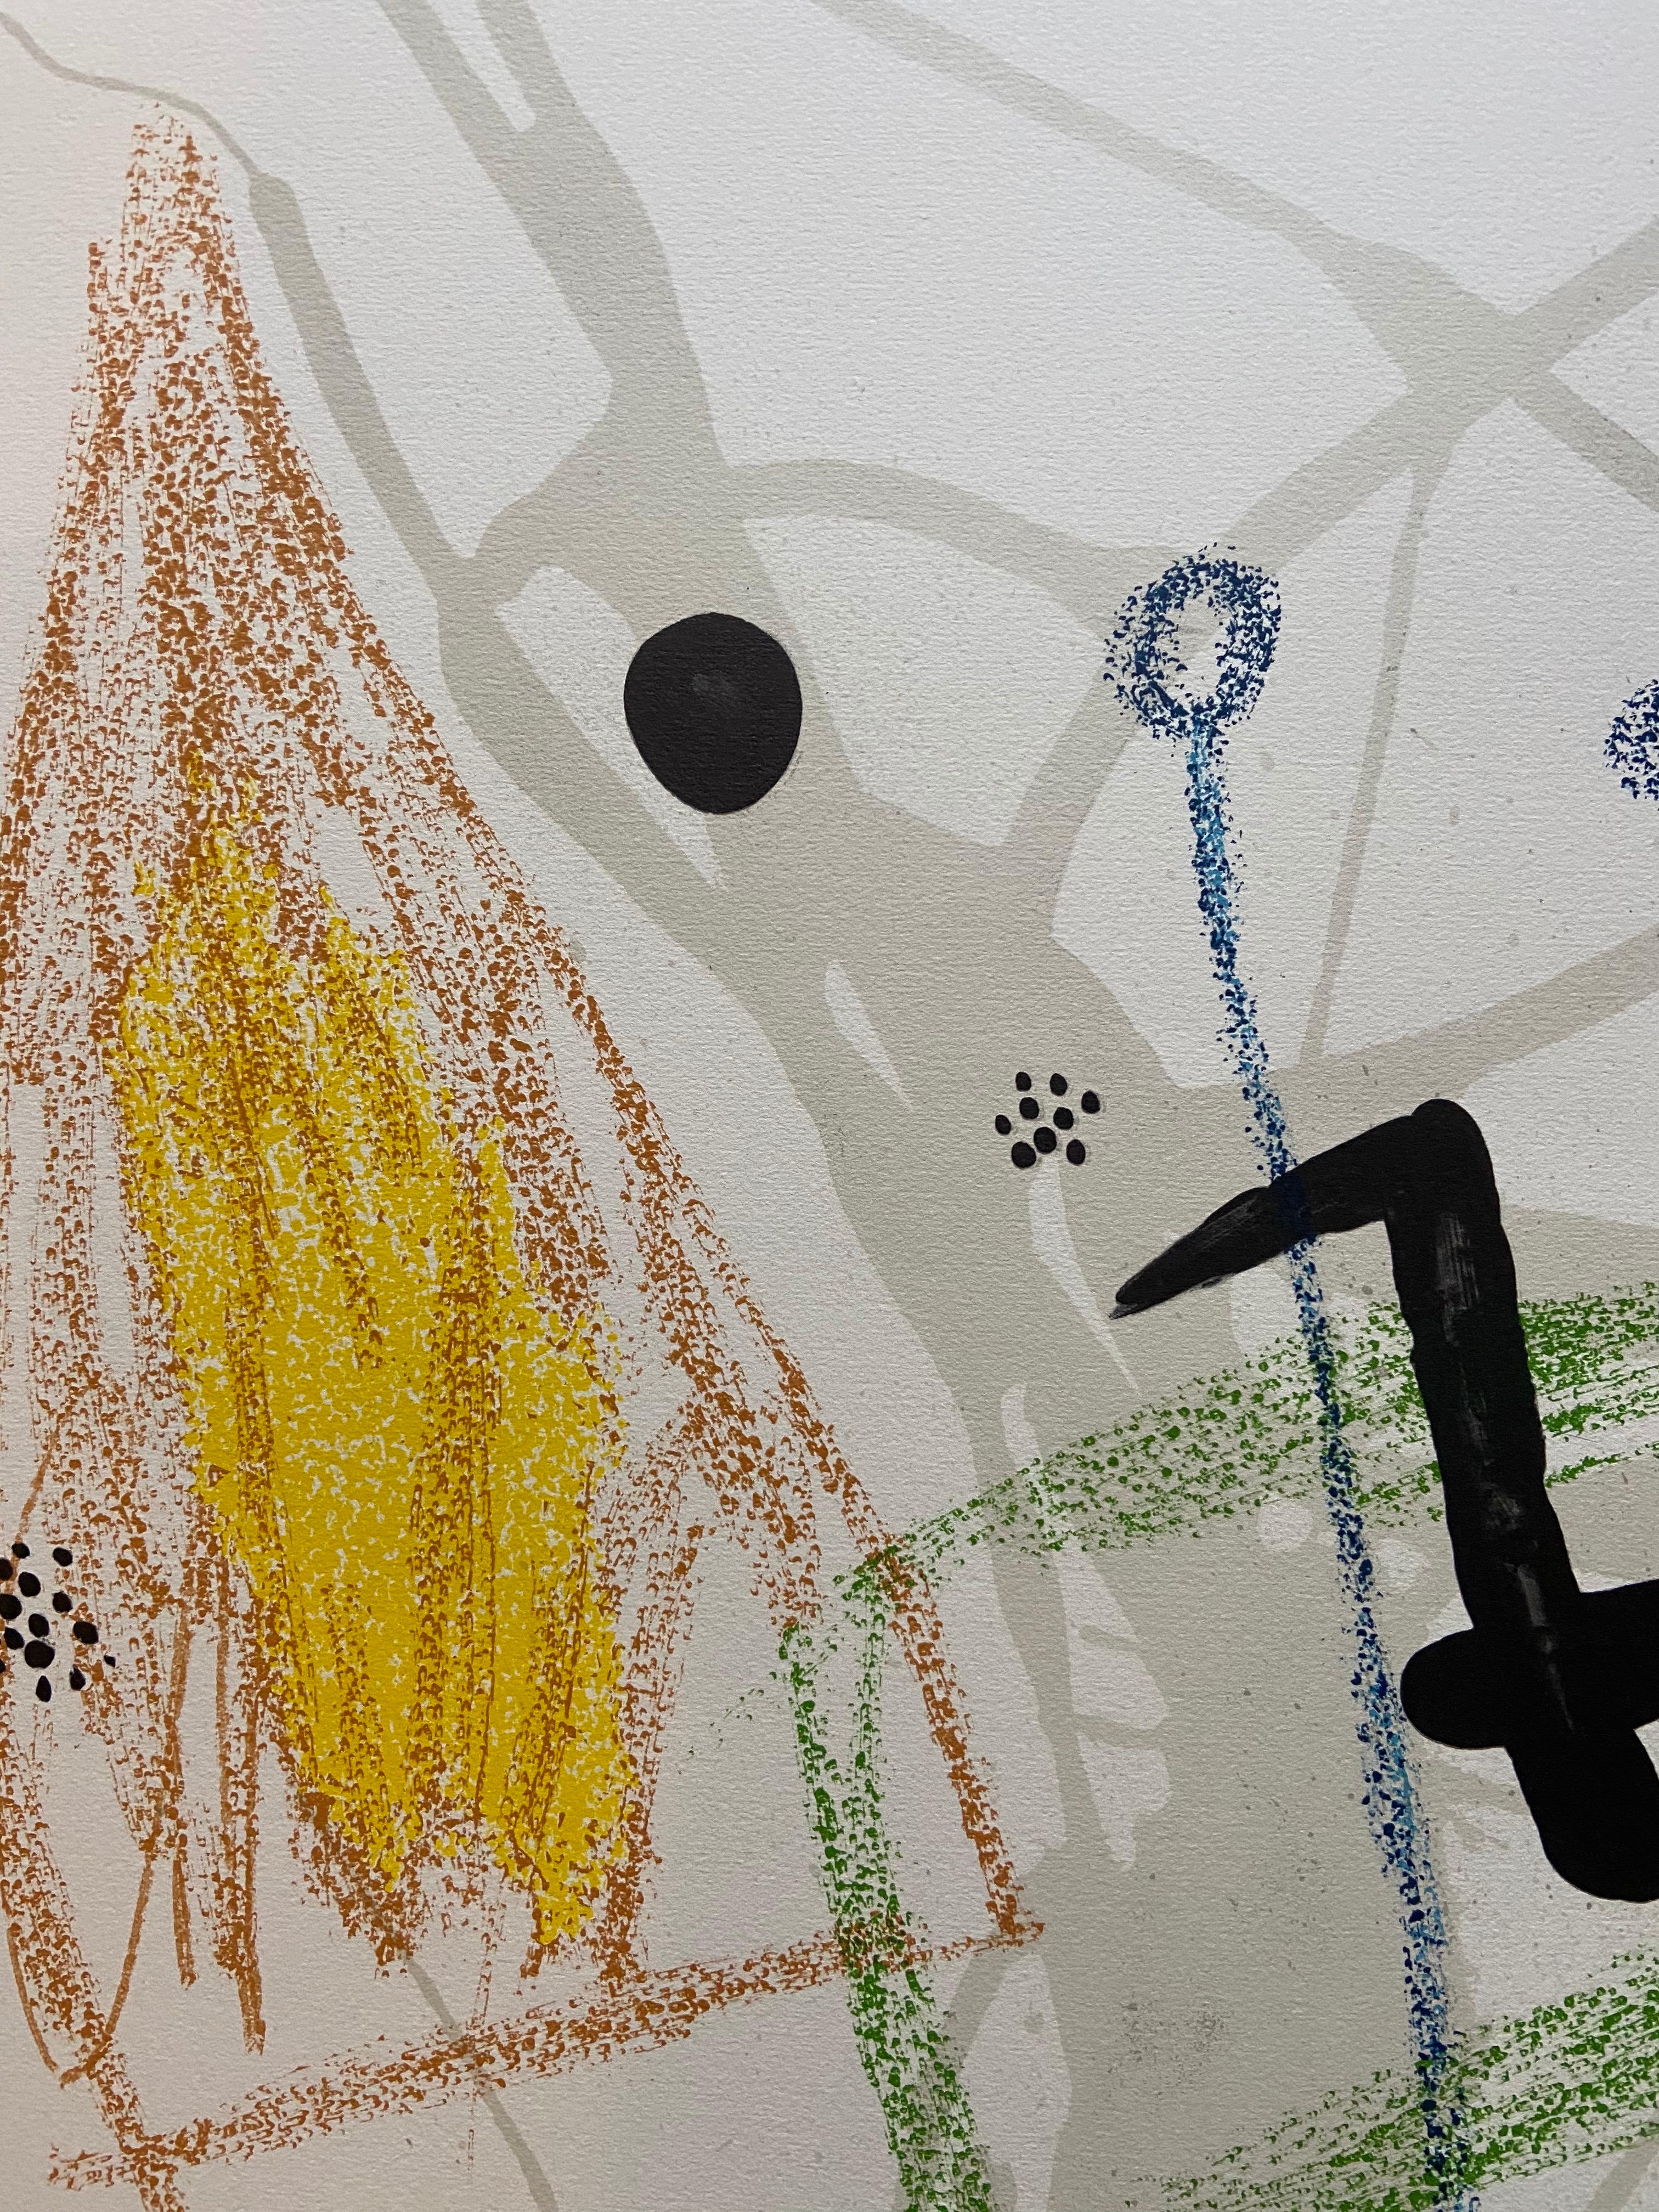 Joan MIR - Maravillas con Variations Acrsticas en el jardin de Miro 5  – Print von Joan Miró